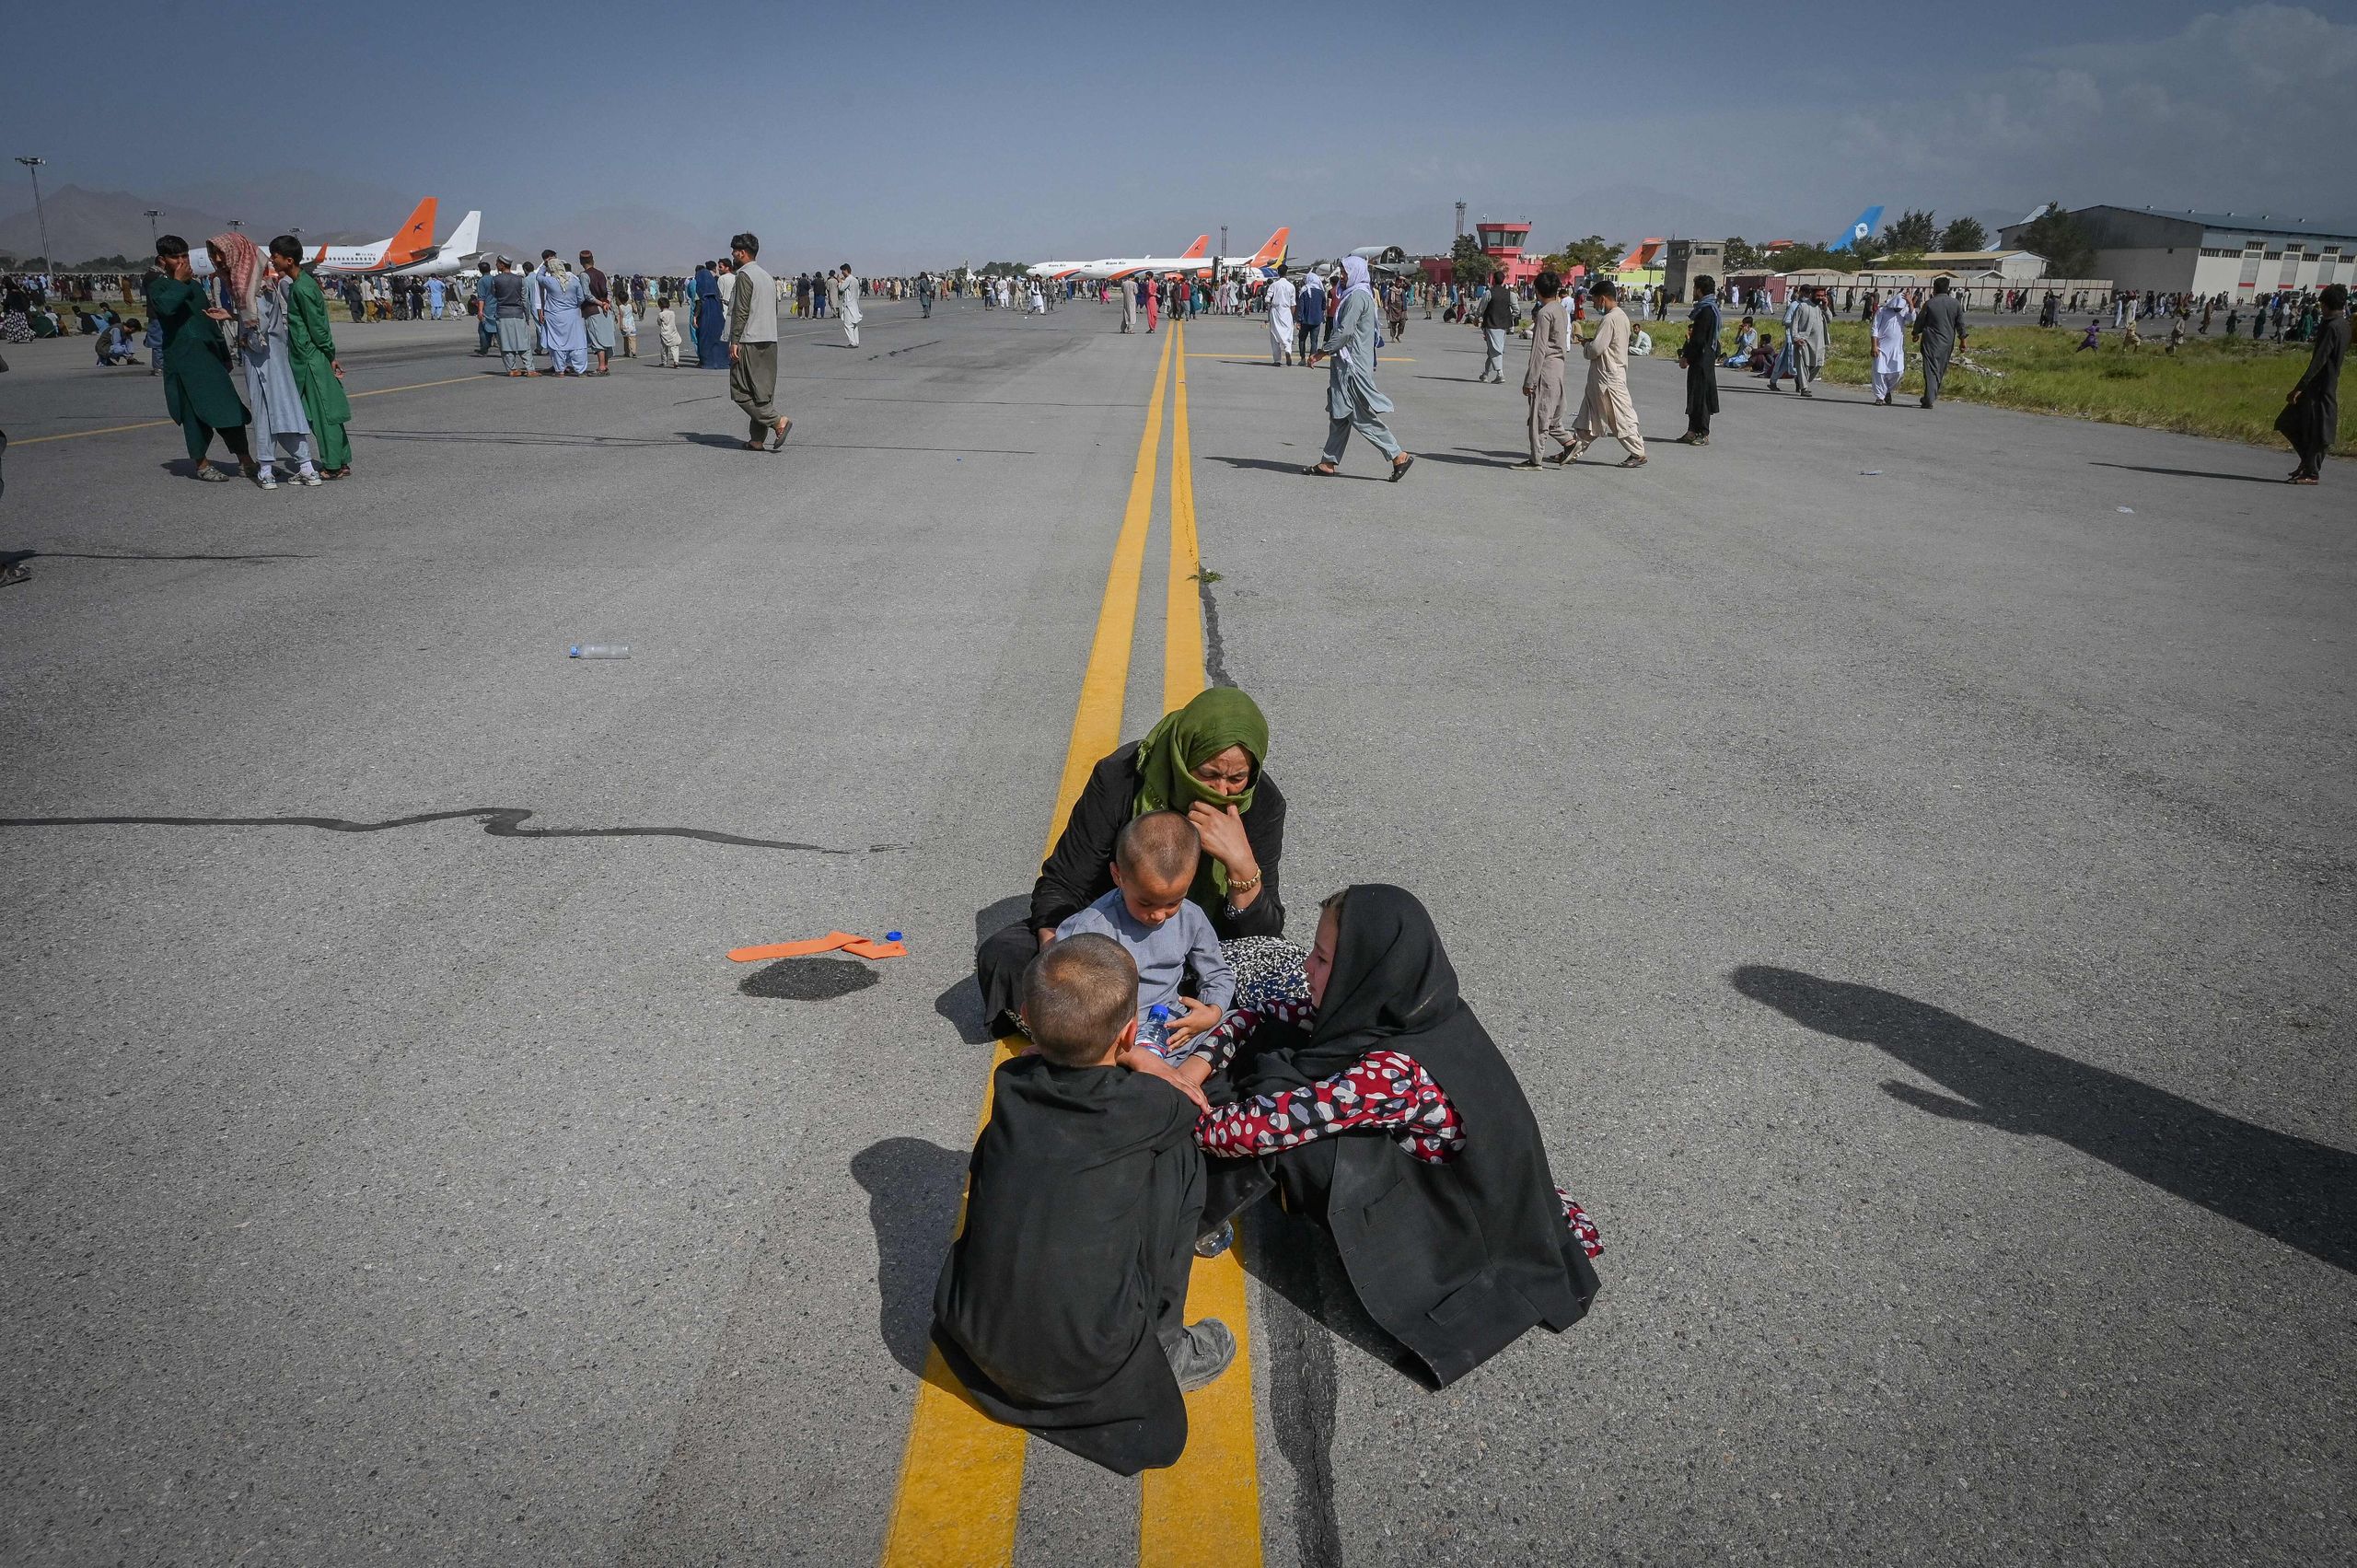 Photo Credit: Kerumunan dan kepanikan warga Afghanistan yang ingin eksodus dari negara tersebut karena merasa takut setelah dikuasai oleh Taliban di bandara saat tentara AS berjaga di Kabul pada 16 Agustus. WAKIL KOHSAR/AFP via Getty Images